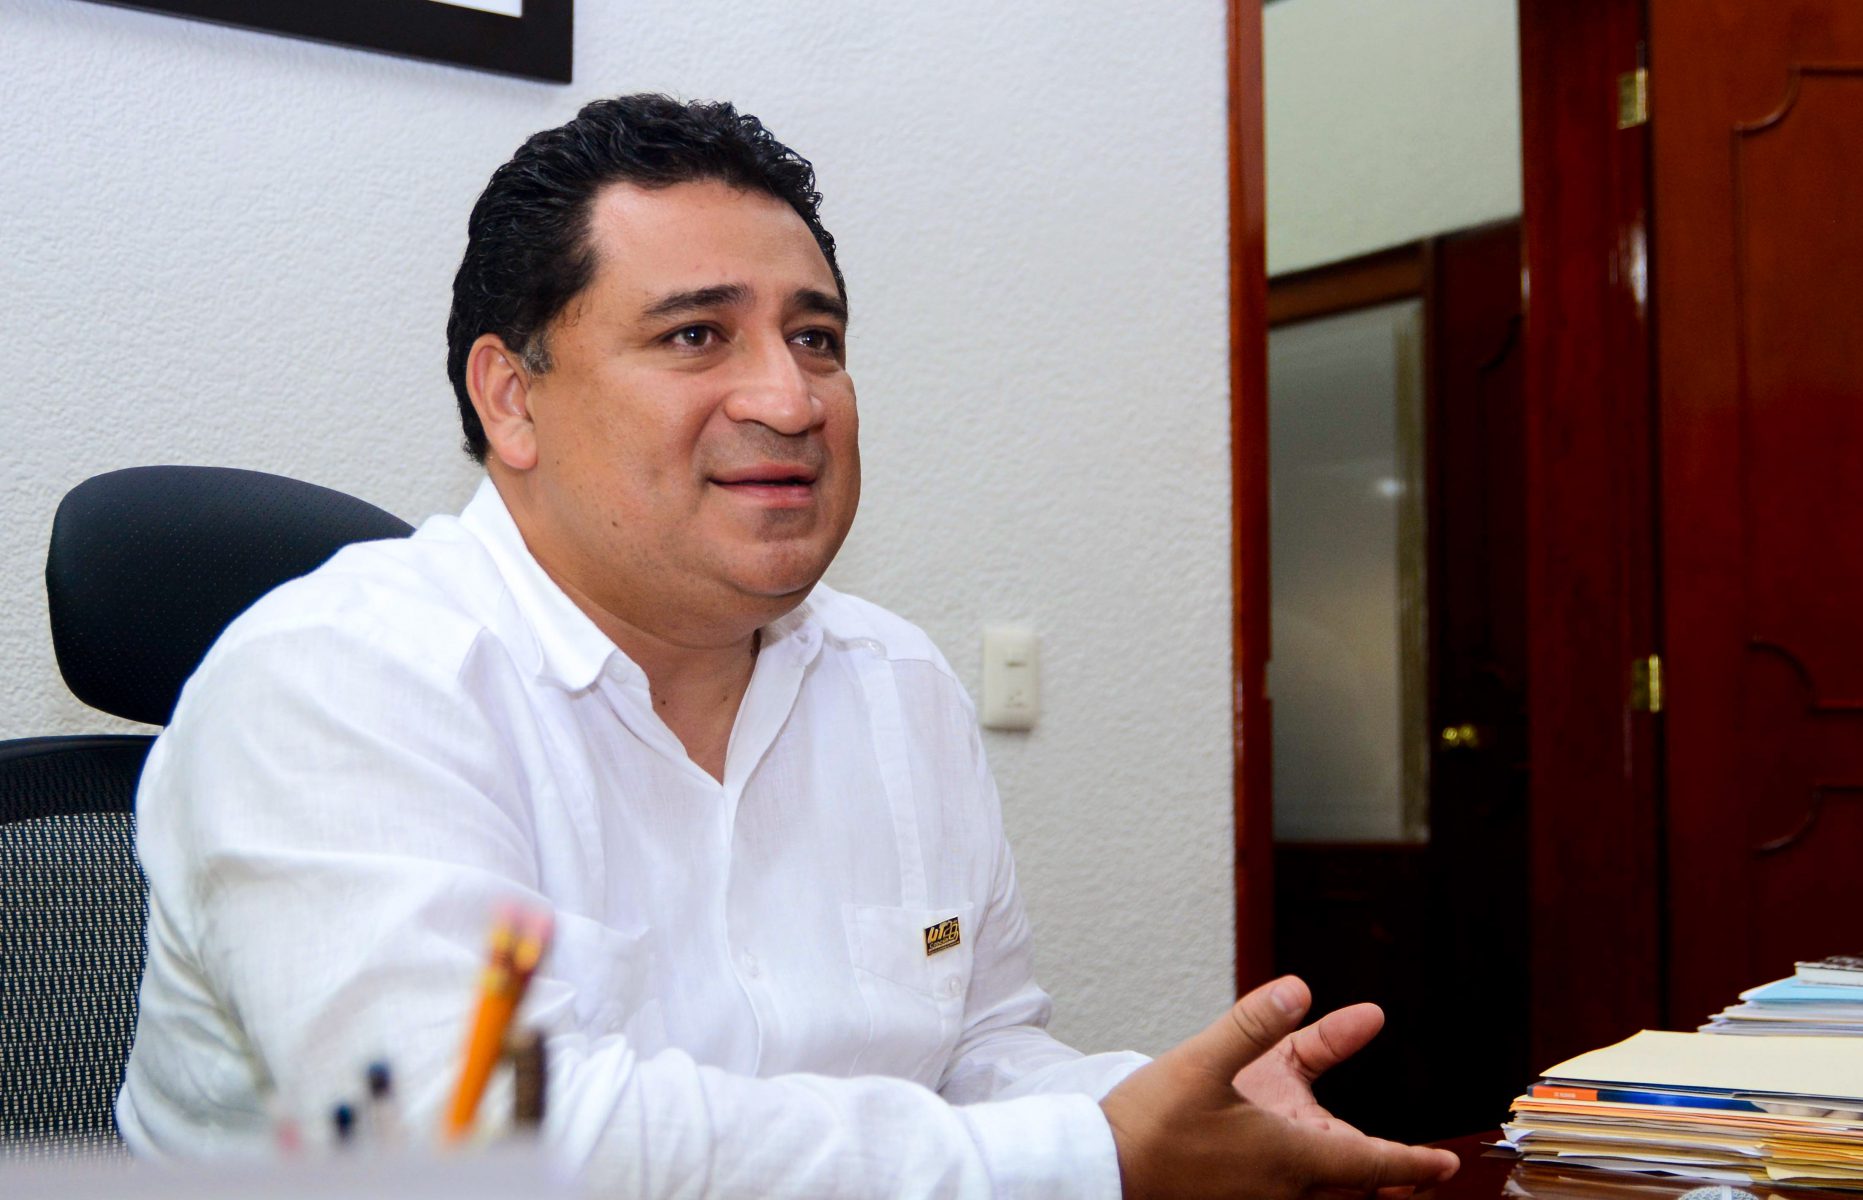 La ciudadanía será fundamental en la implementación del Sistema Estatal Anticorrupción, aseguró el diputado Eduardo Martínez Arcila.